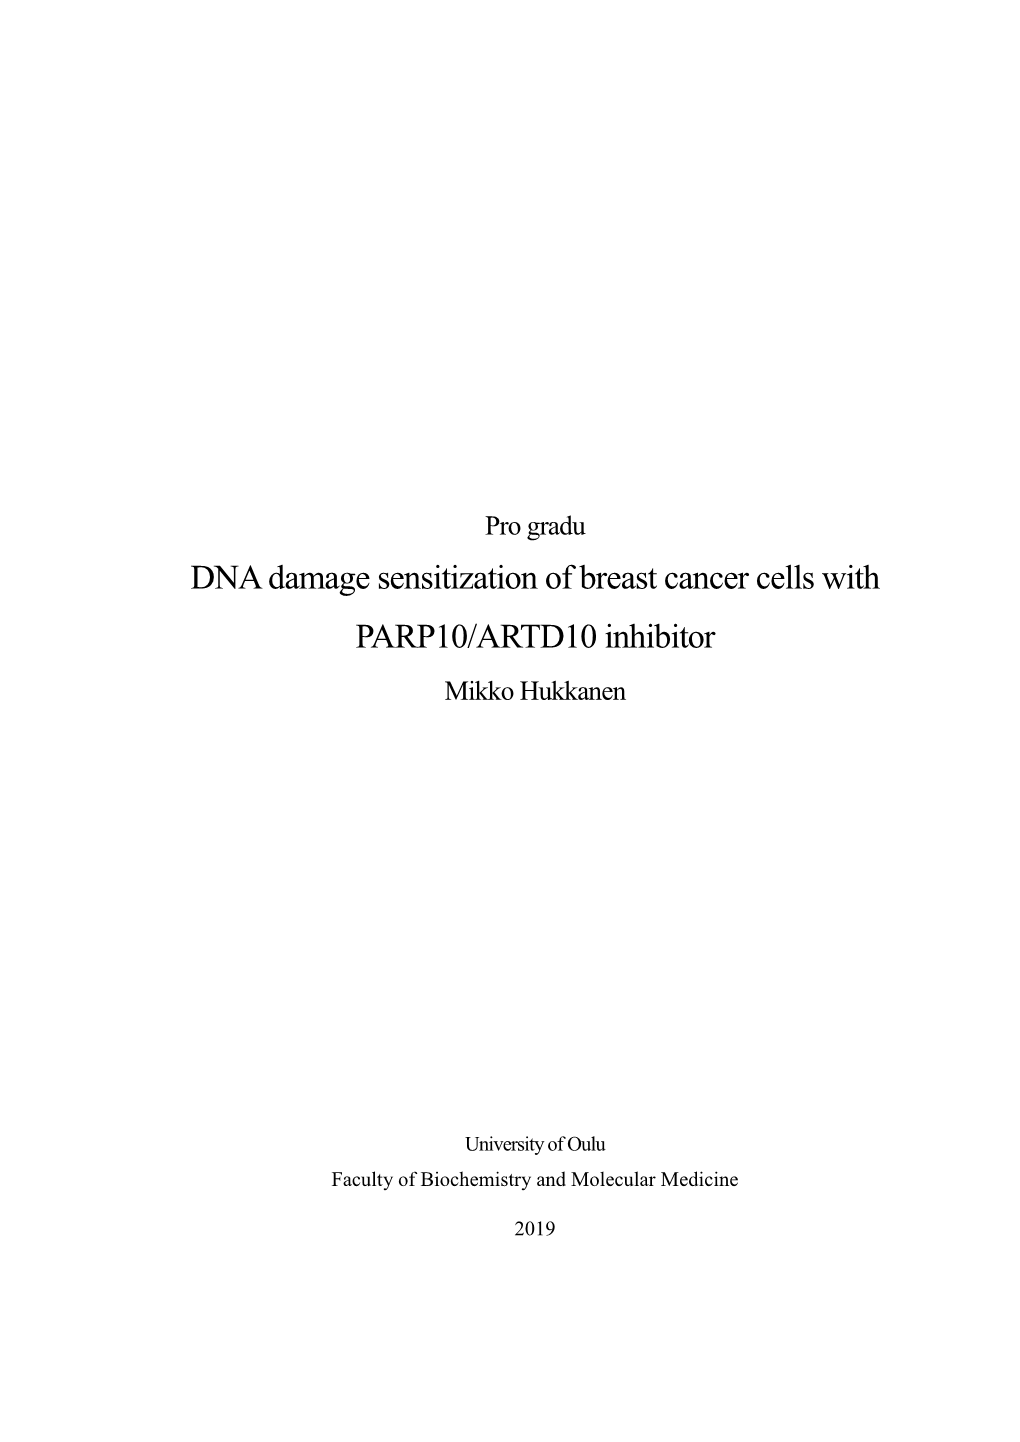 DNA Damage Sensitization of Breast Cancer Cells with PARP10/ARTD10 Inhibitor Mikko Hukkanen